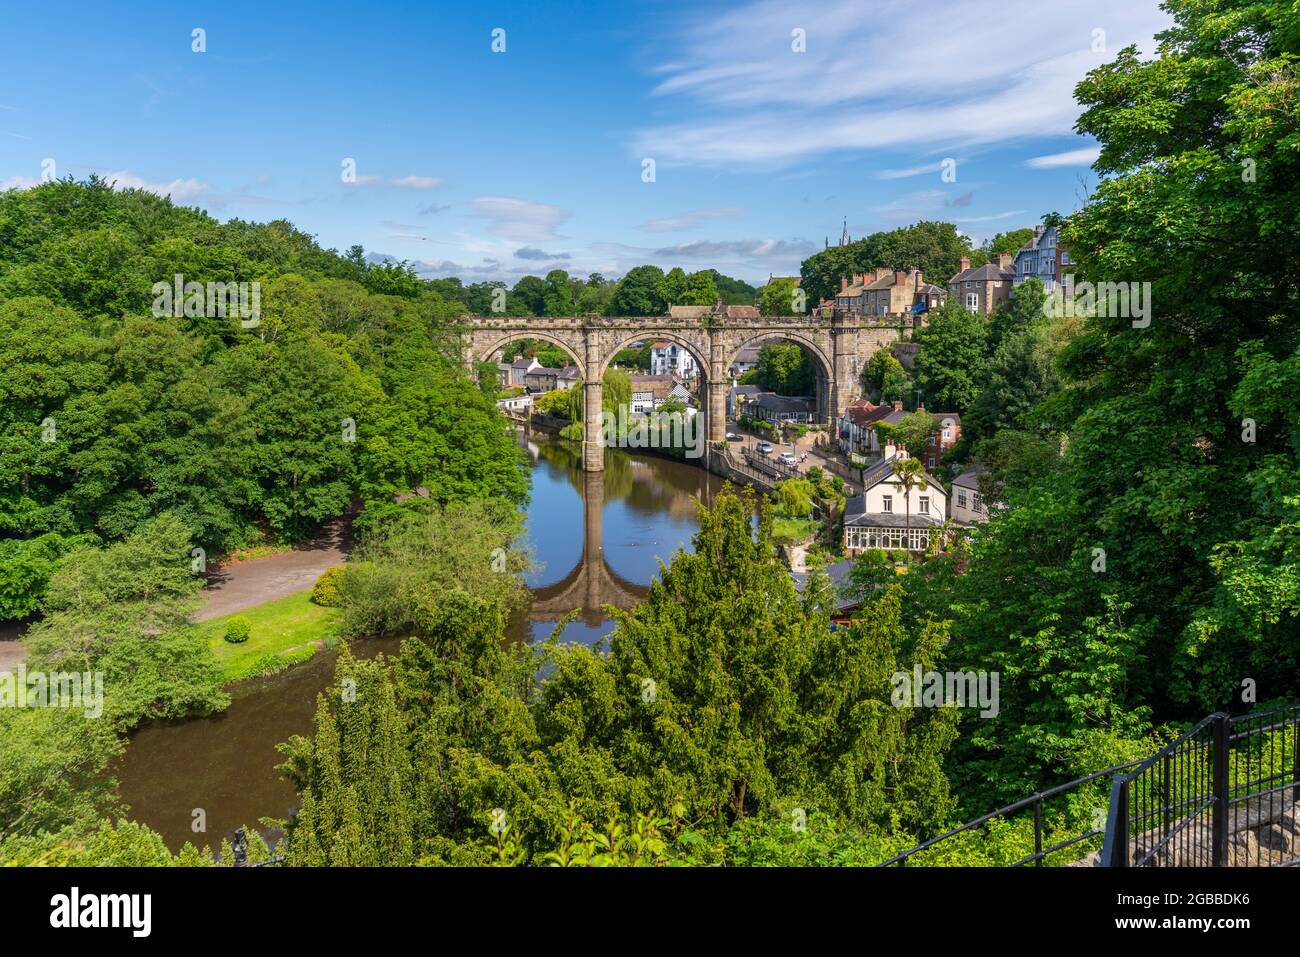 Blick auf das Viadukt von Knaresborough und den Fluss Nidd vom Castle aus, Knaresborough, North Yorkshire, England, Vereinigtes Königreich, Europa Stockfoto